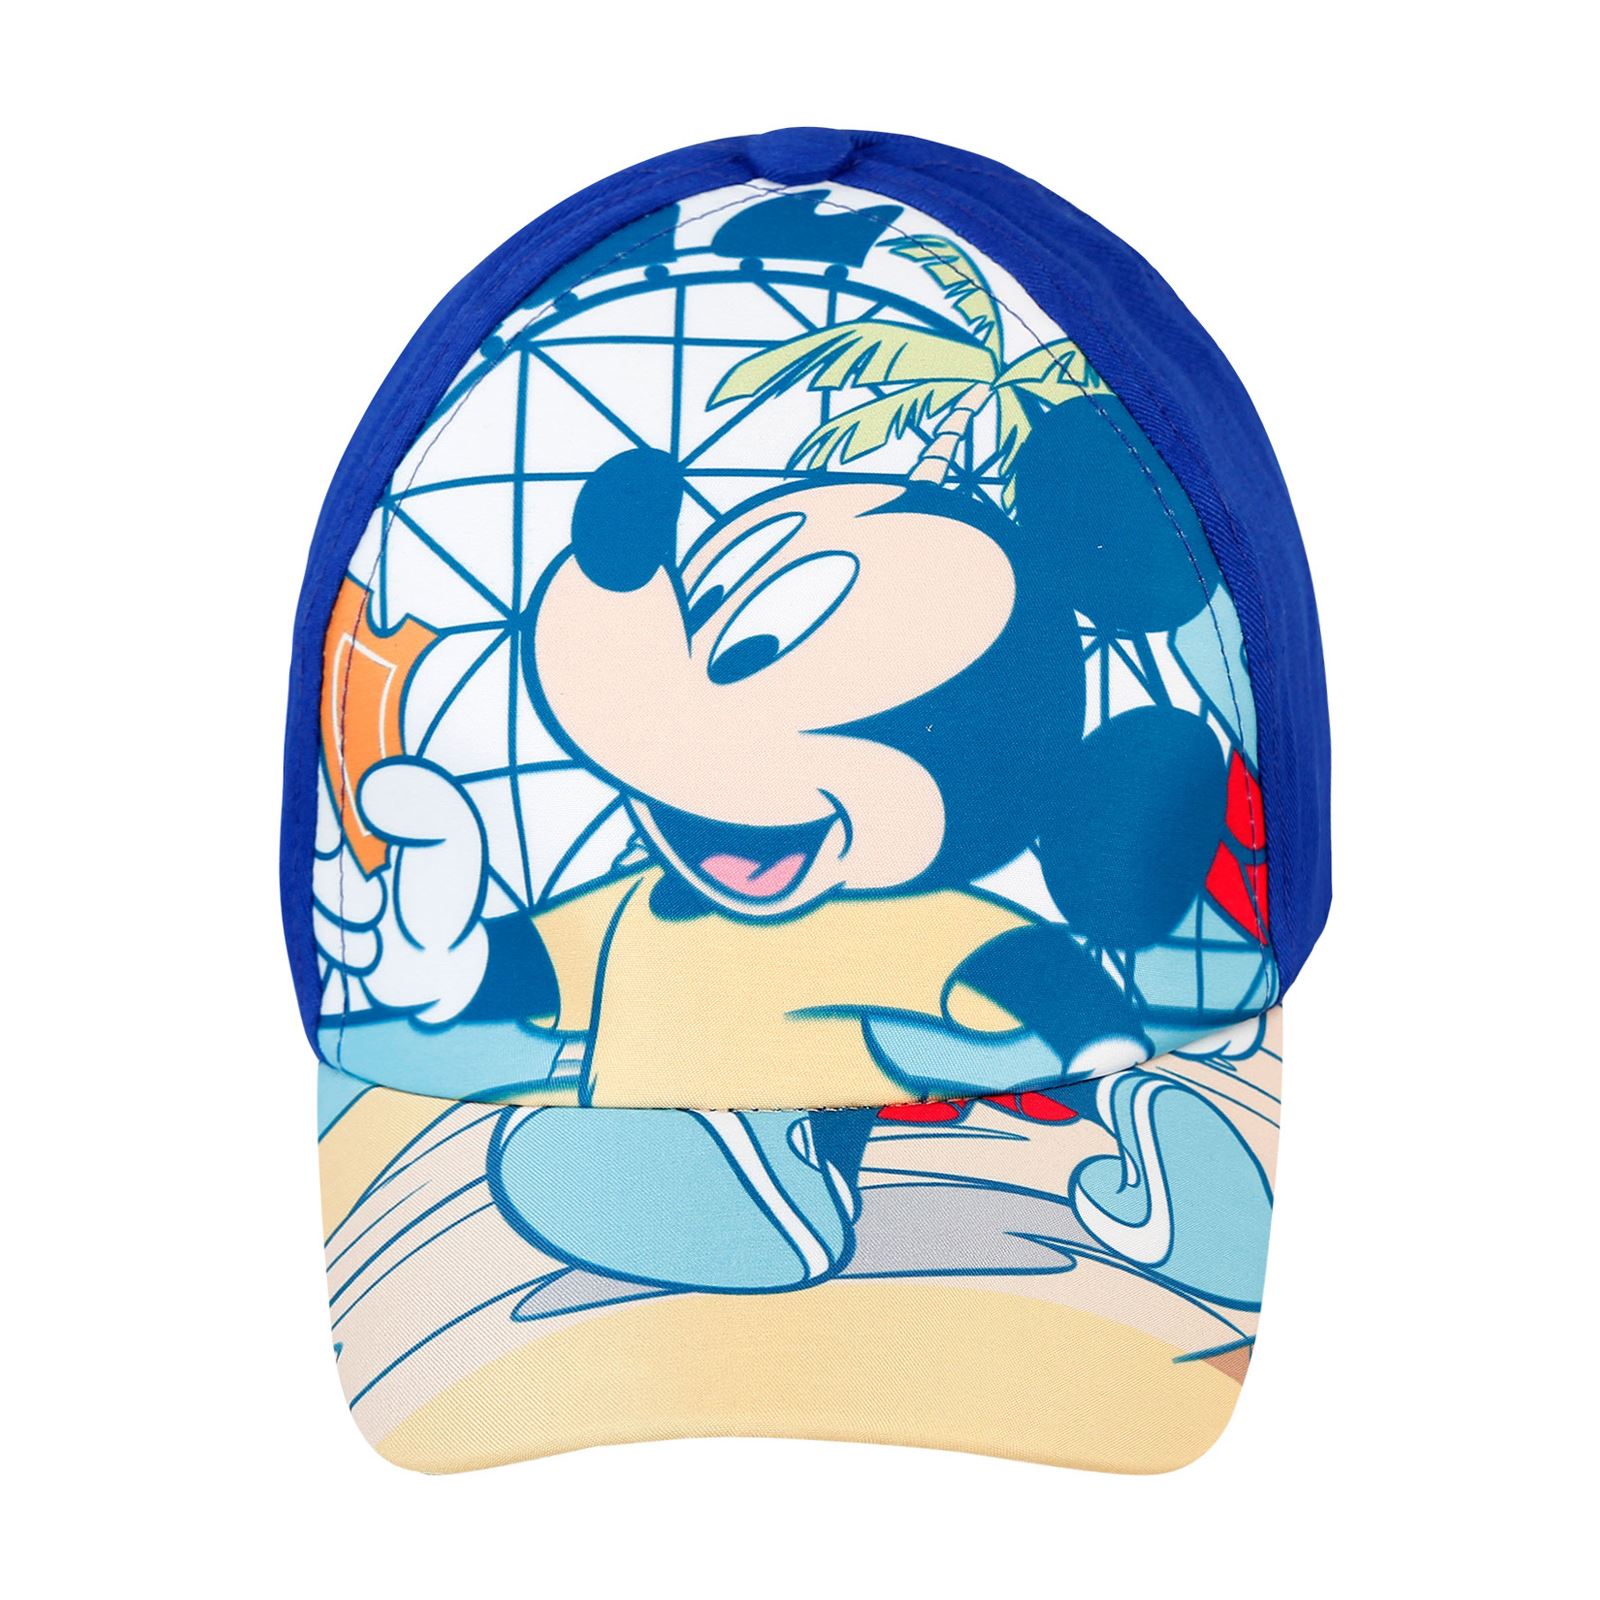 Mickey Mouse Erkek Çocuk Şapka 2-4 Yaş Saks Mavisi